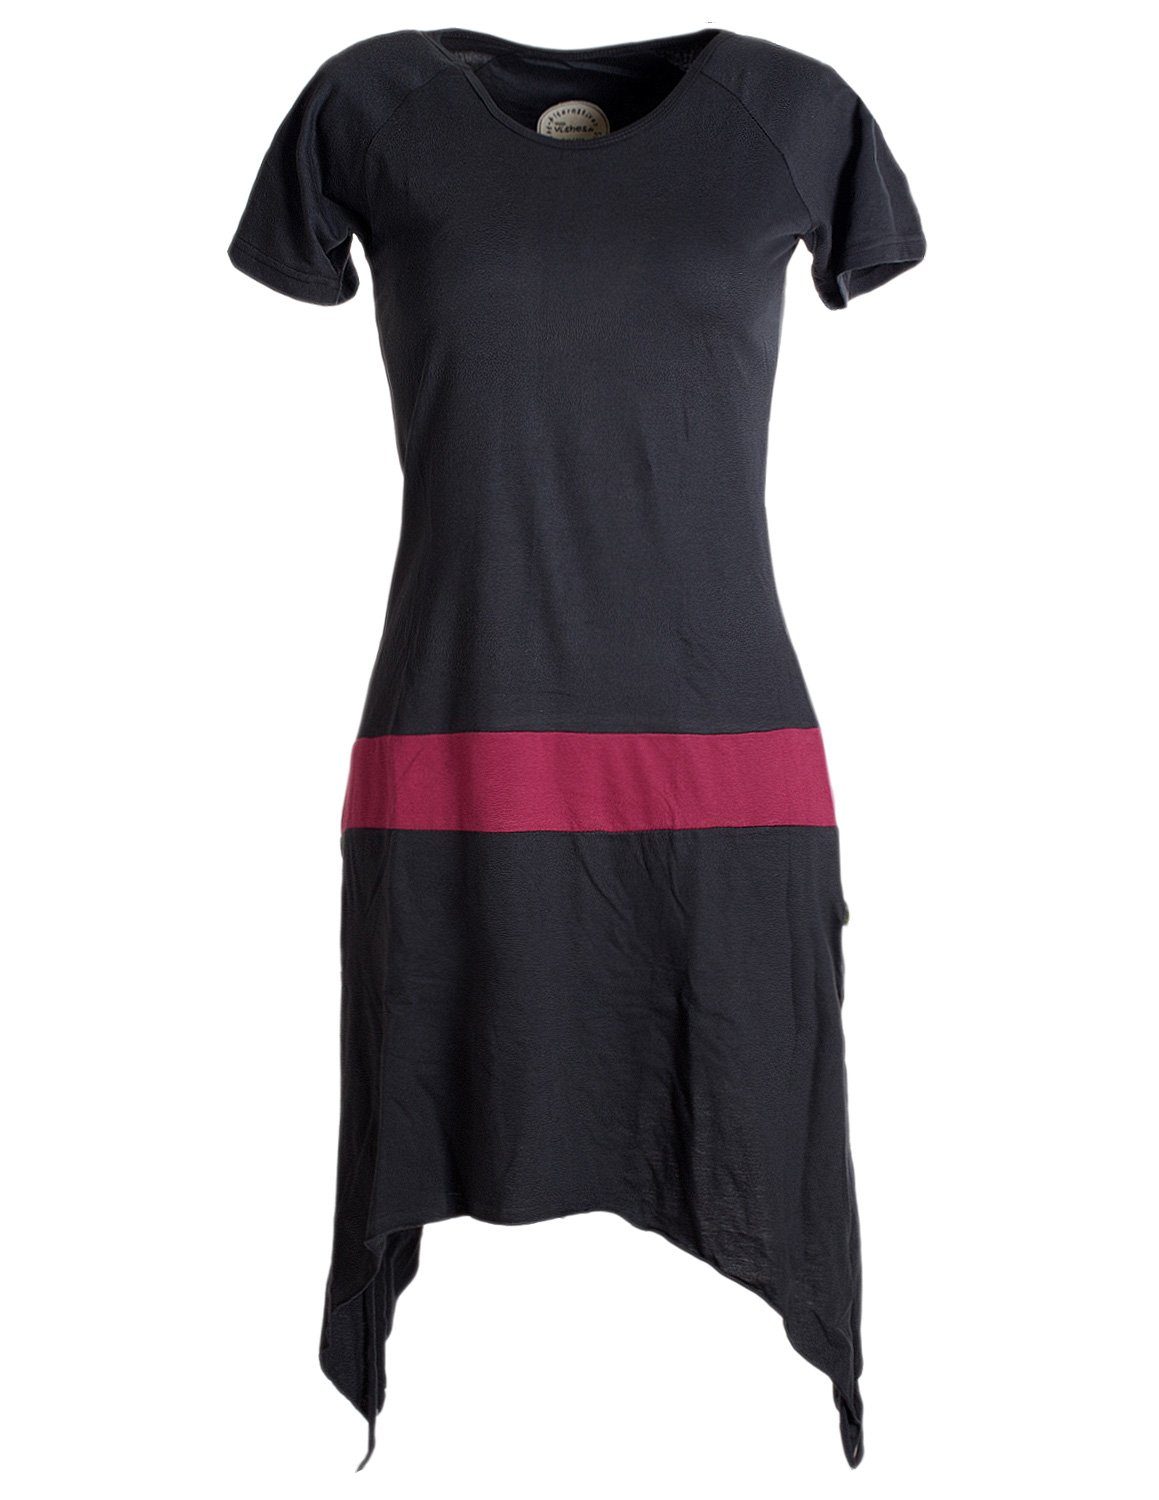 Vishes Sommerkleid Einfaches kurzärmliges Zipfelkleid aus Baumwolle Tunika, Longshirt, Hippie Style schwarz-dunkelrot